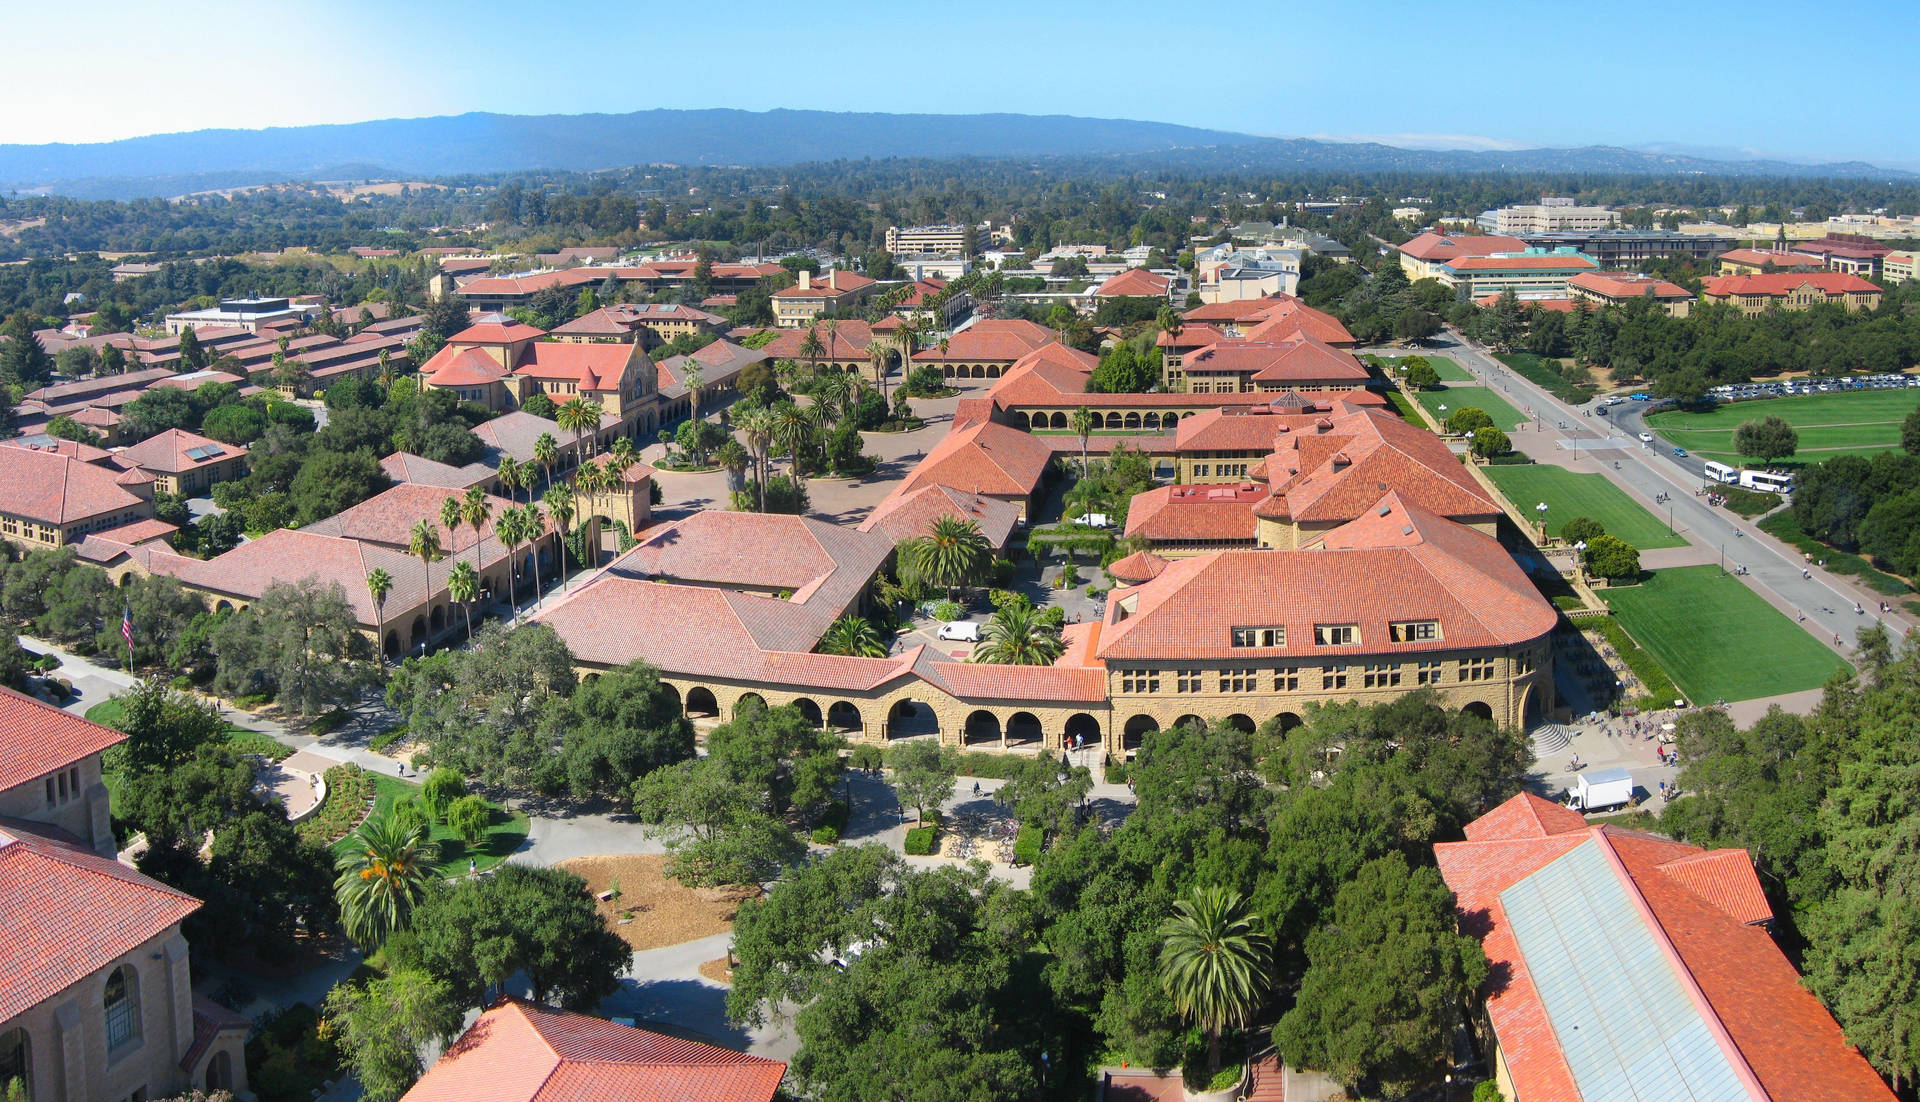 Vistaaerea Del Campus Dell'università Di Stanford Sfondo